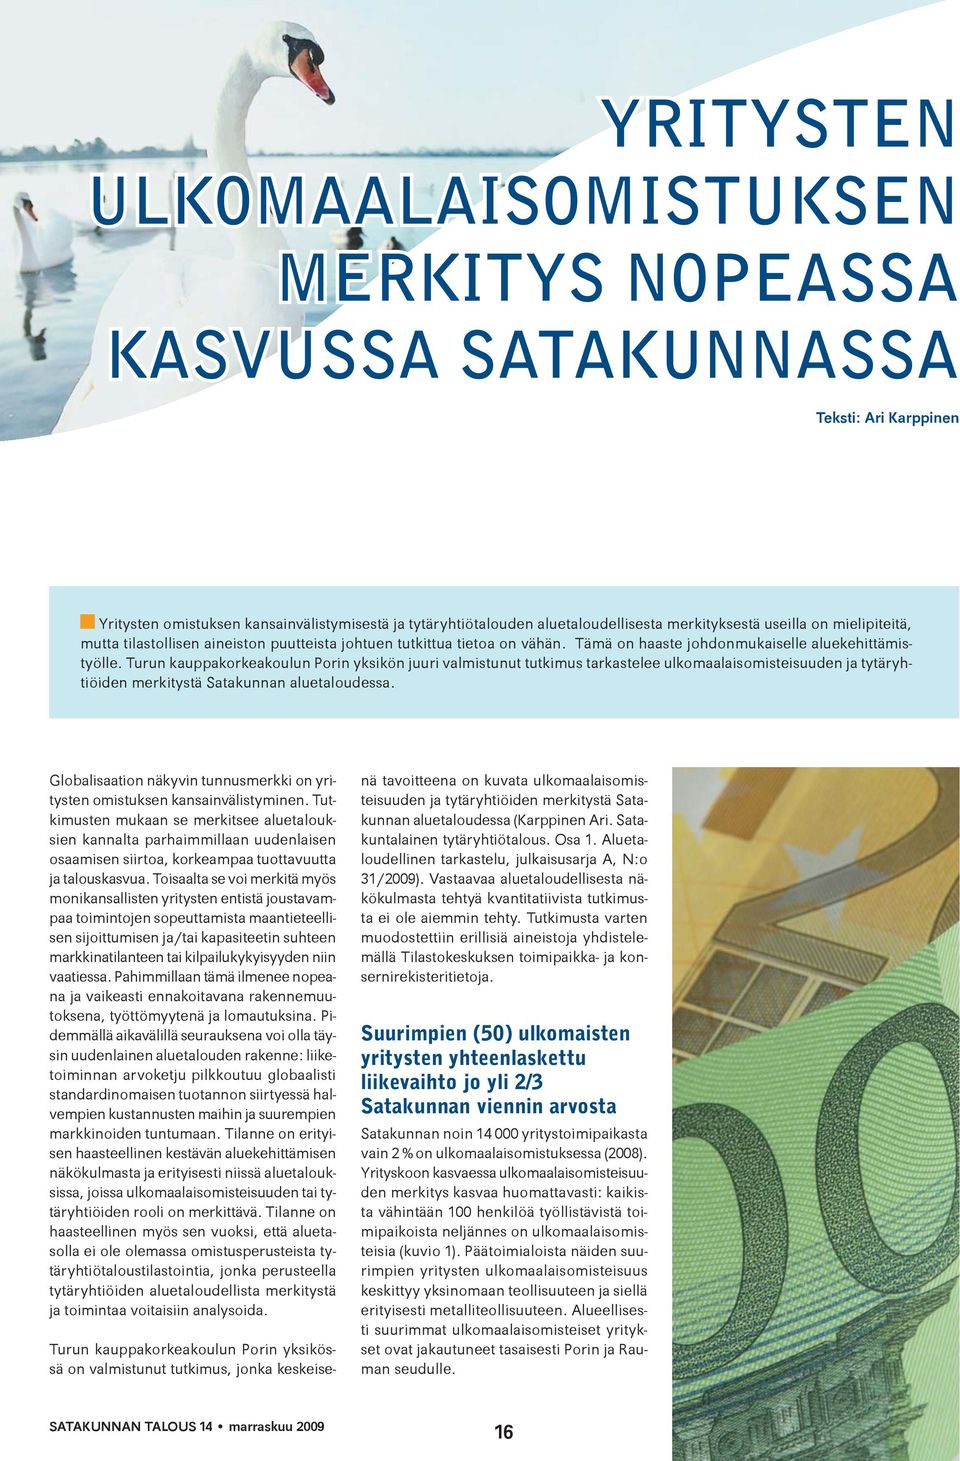 Turun kauppakorkeakoulun Porin yksikön juuri valmistunut tutkimus tarkastelee ulkomaalaisomisteisuuden ja tytäryhtiöiden merkitystä Satakunnan aluetaloudessa.